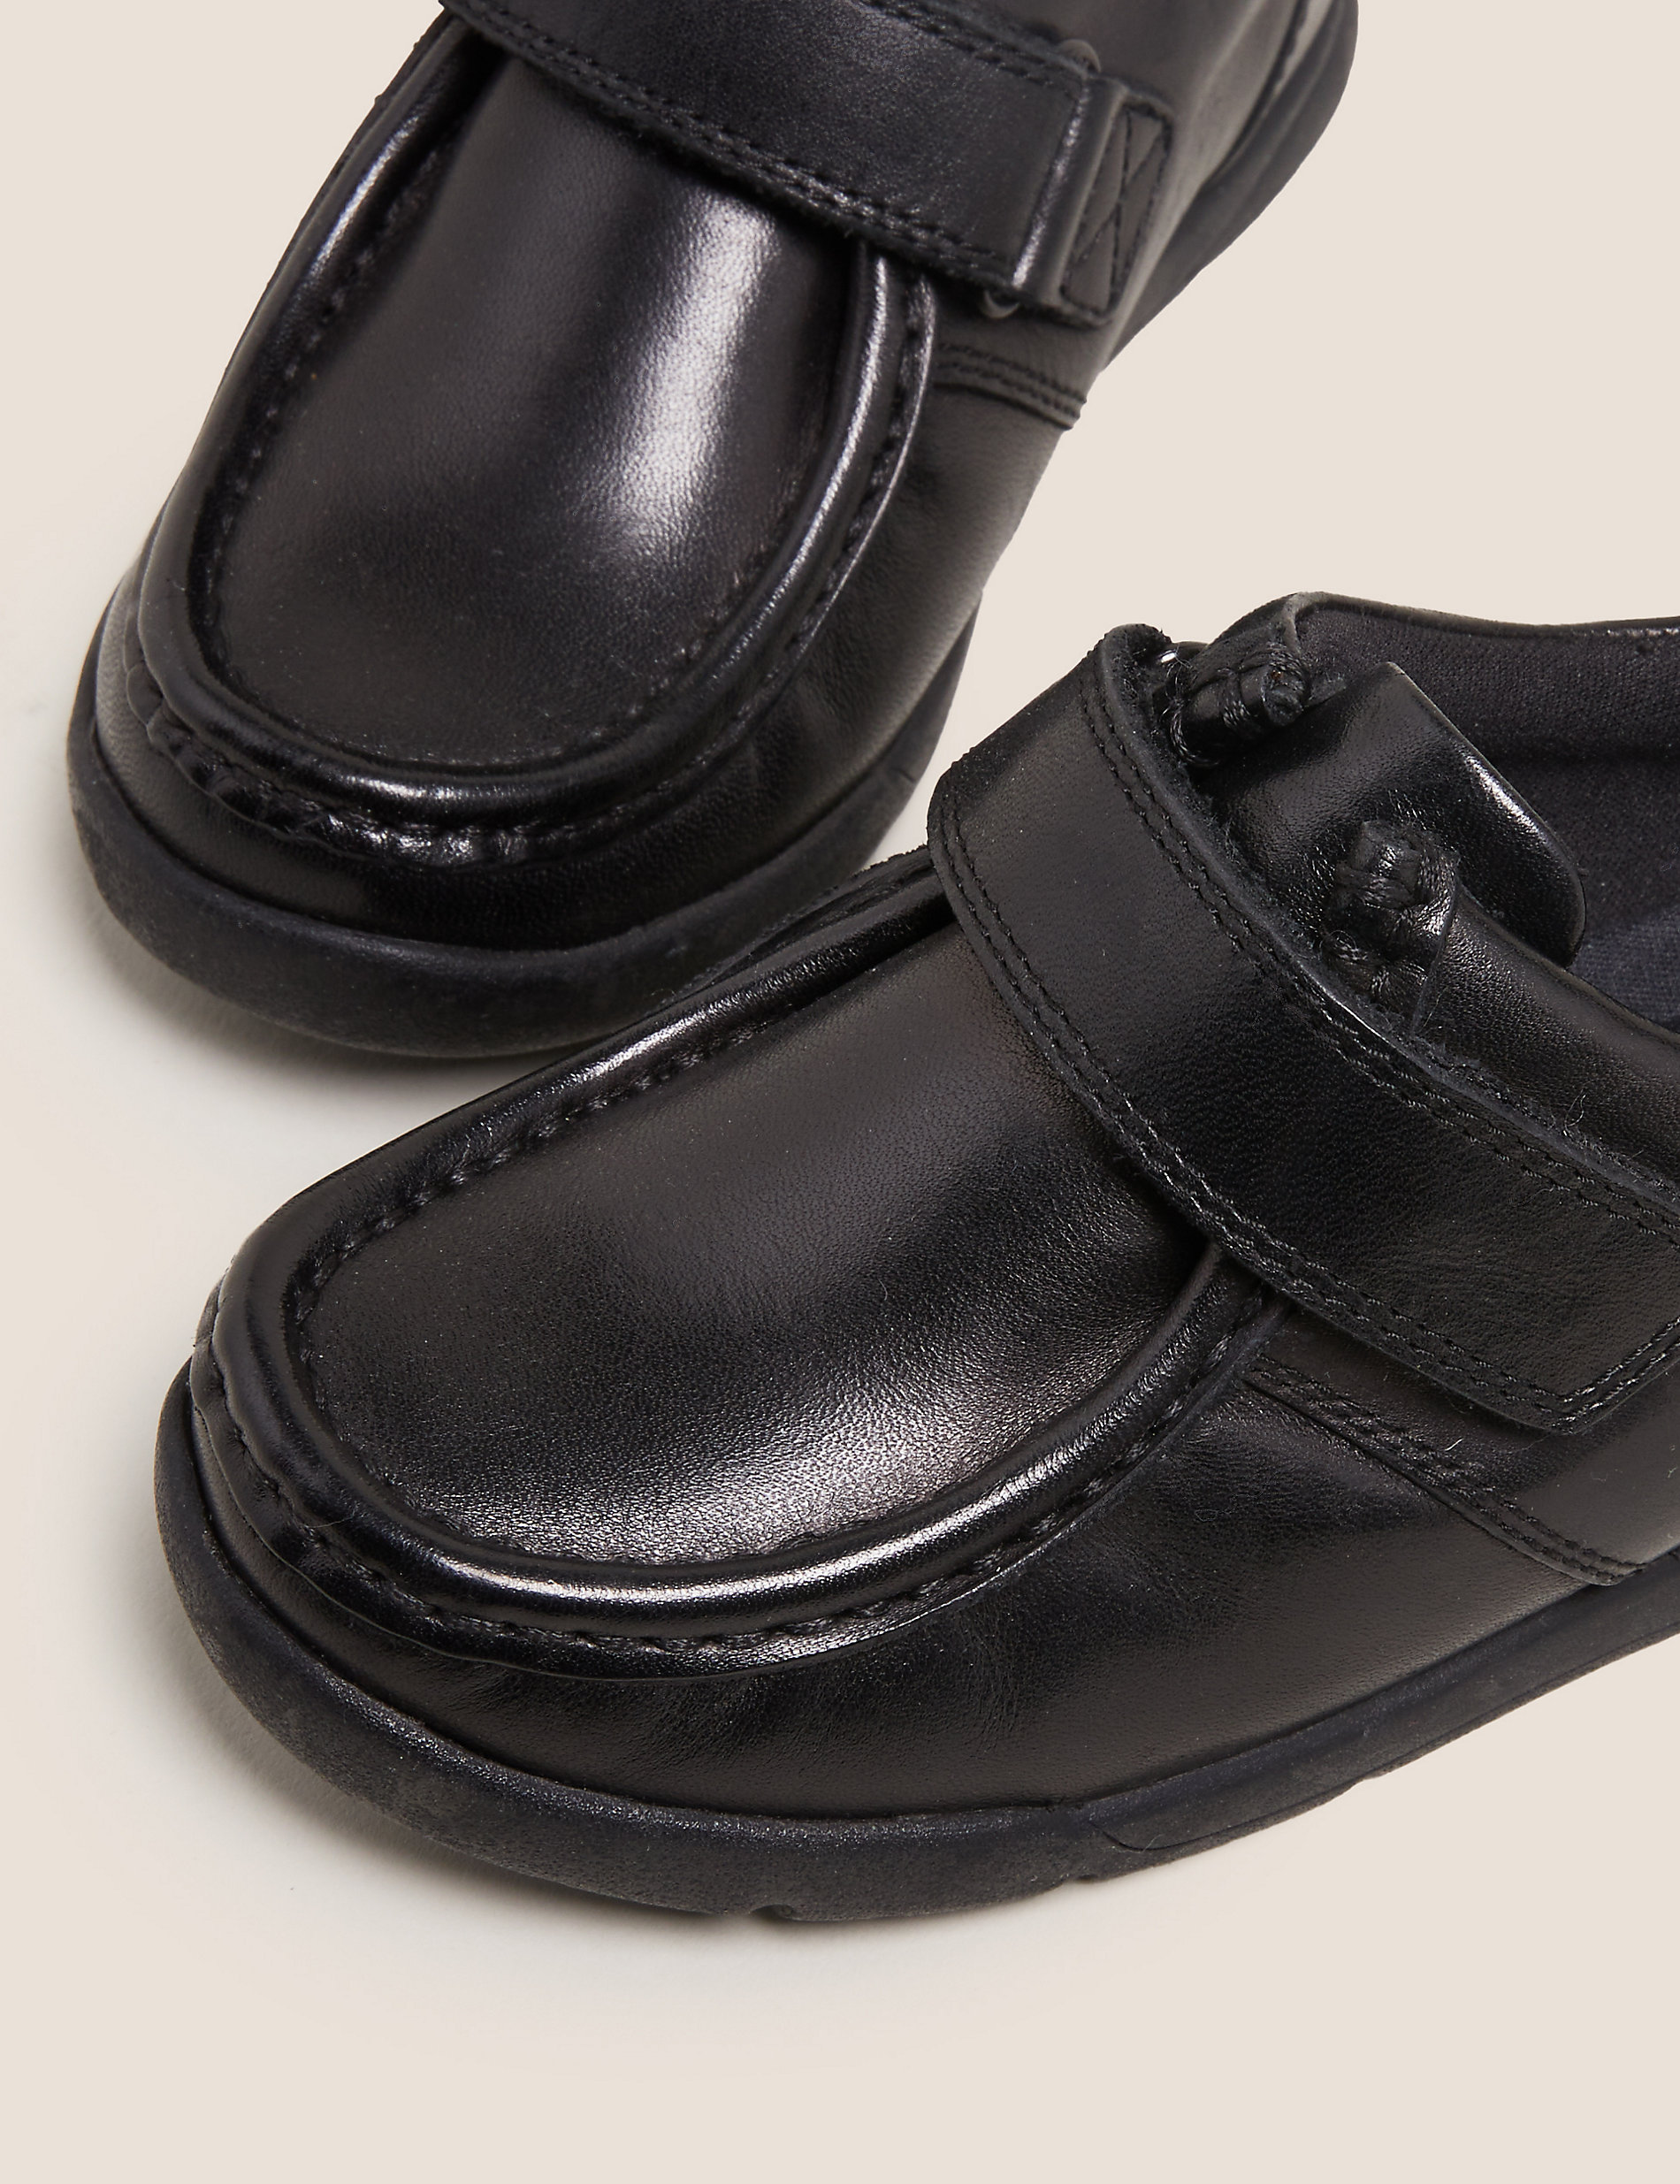 Chaussures enfants en cuir à bande auto-agrippante, idéales pour l’école (du 25,5 au 33)